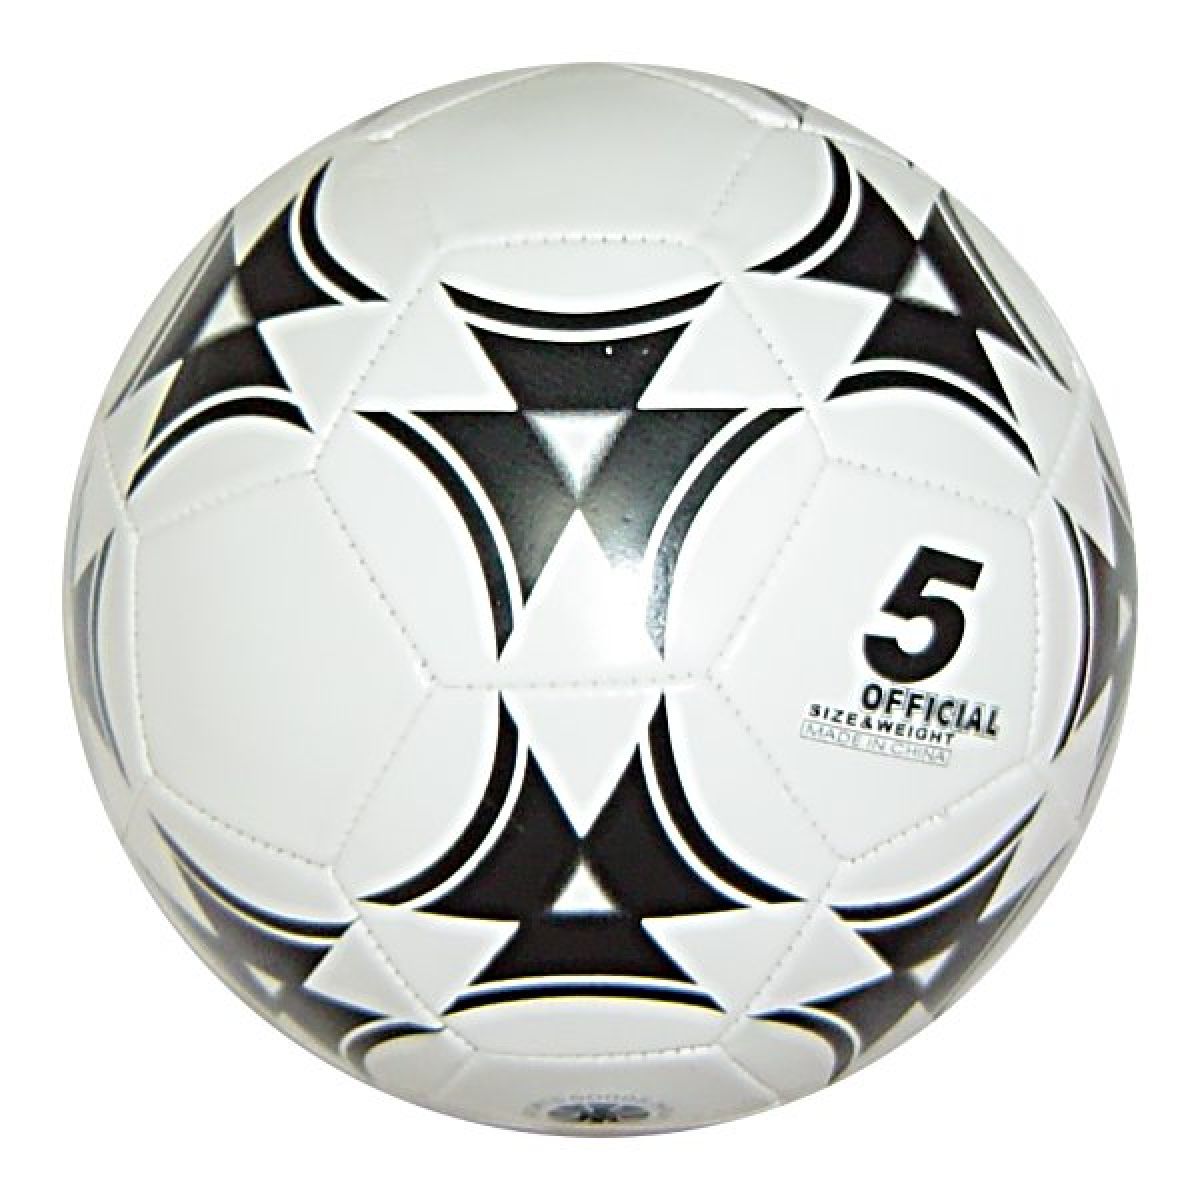 Spokey Fotbalový míč Cball černo-bílý